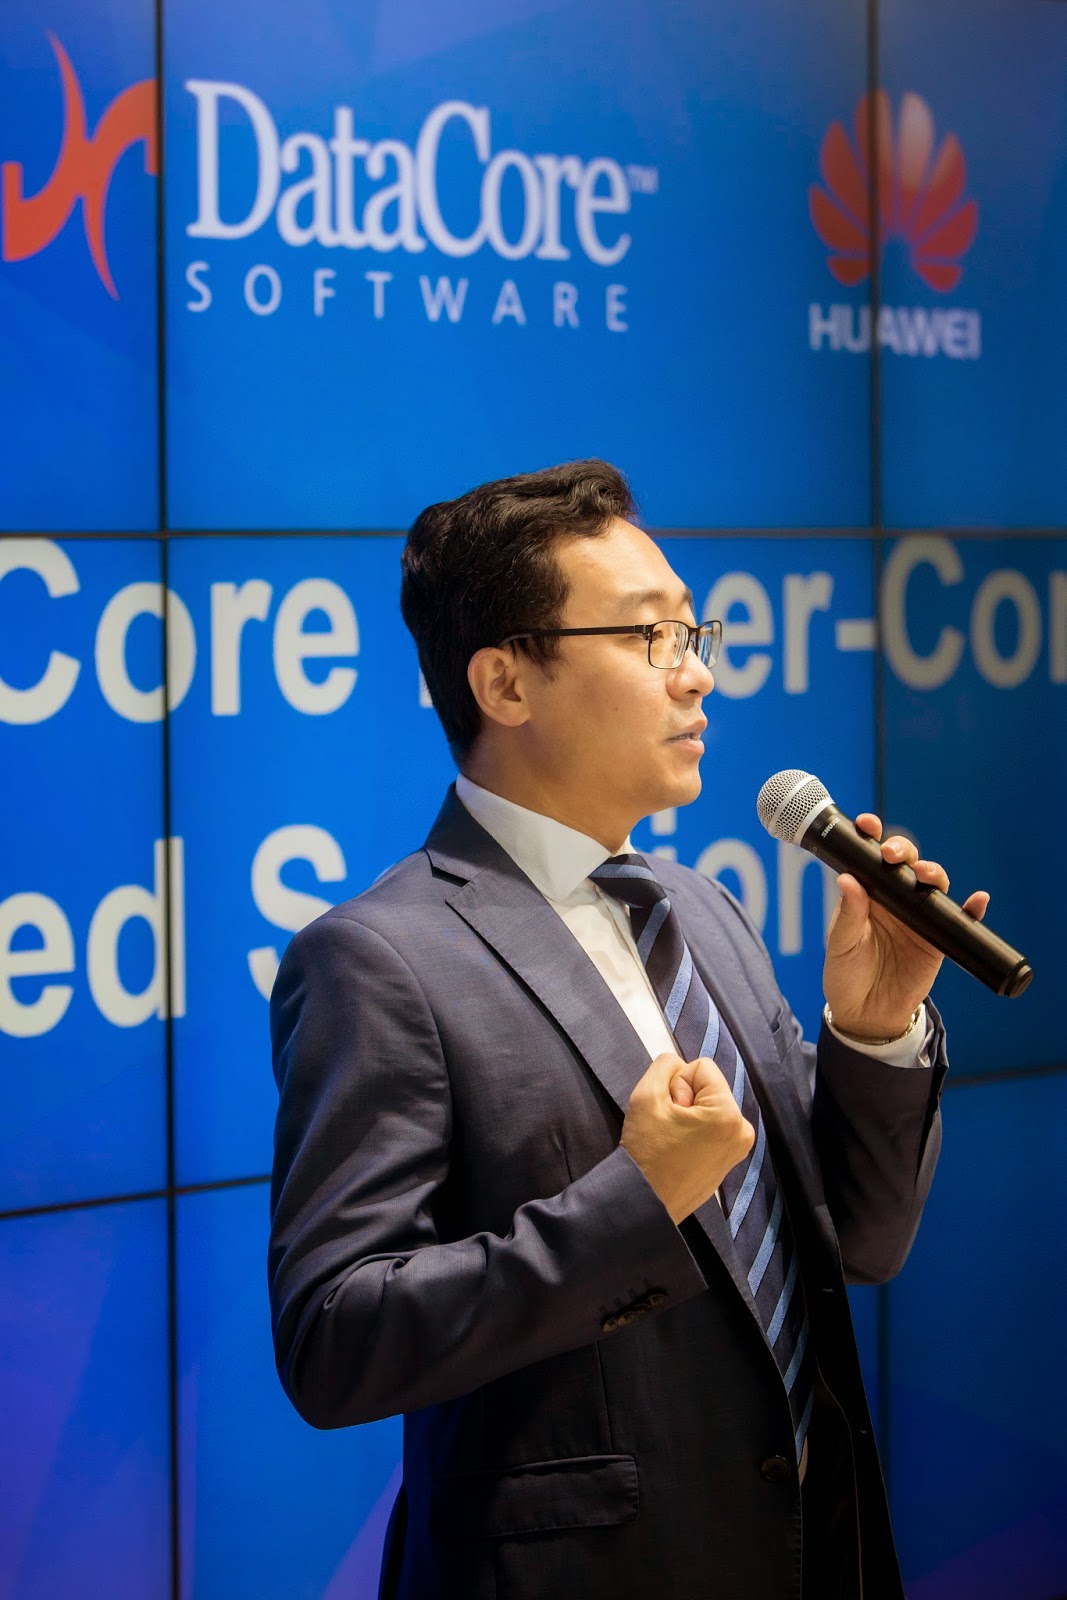 Huawei und DataCore beschließen weltweite Partnerschaft für hyper konvergente Lösungen